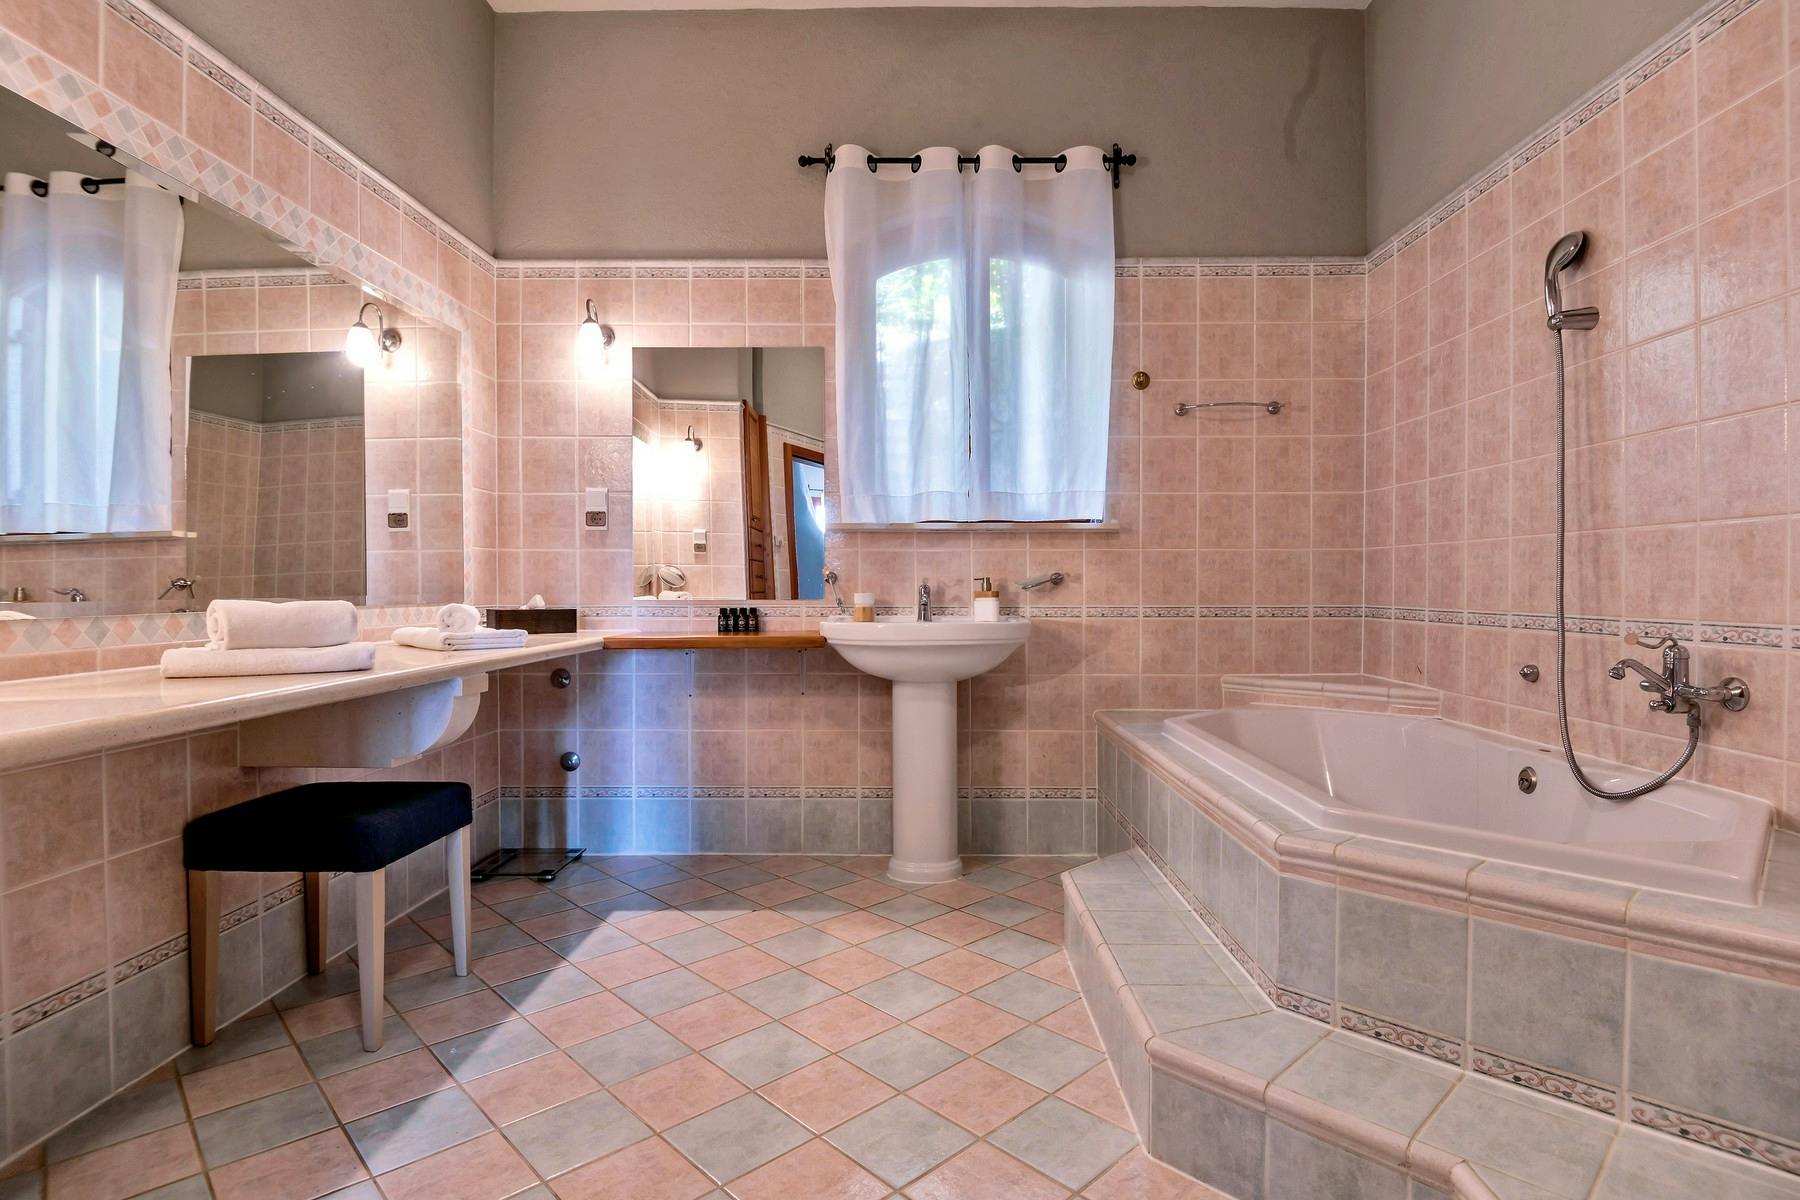 Spacious bathroom with bath tub